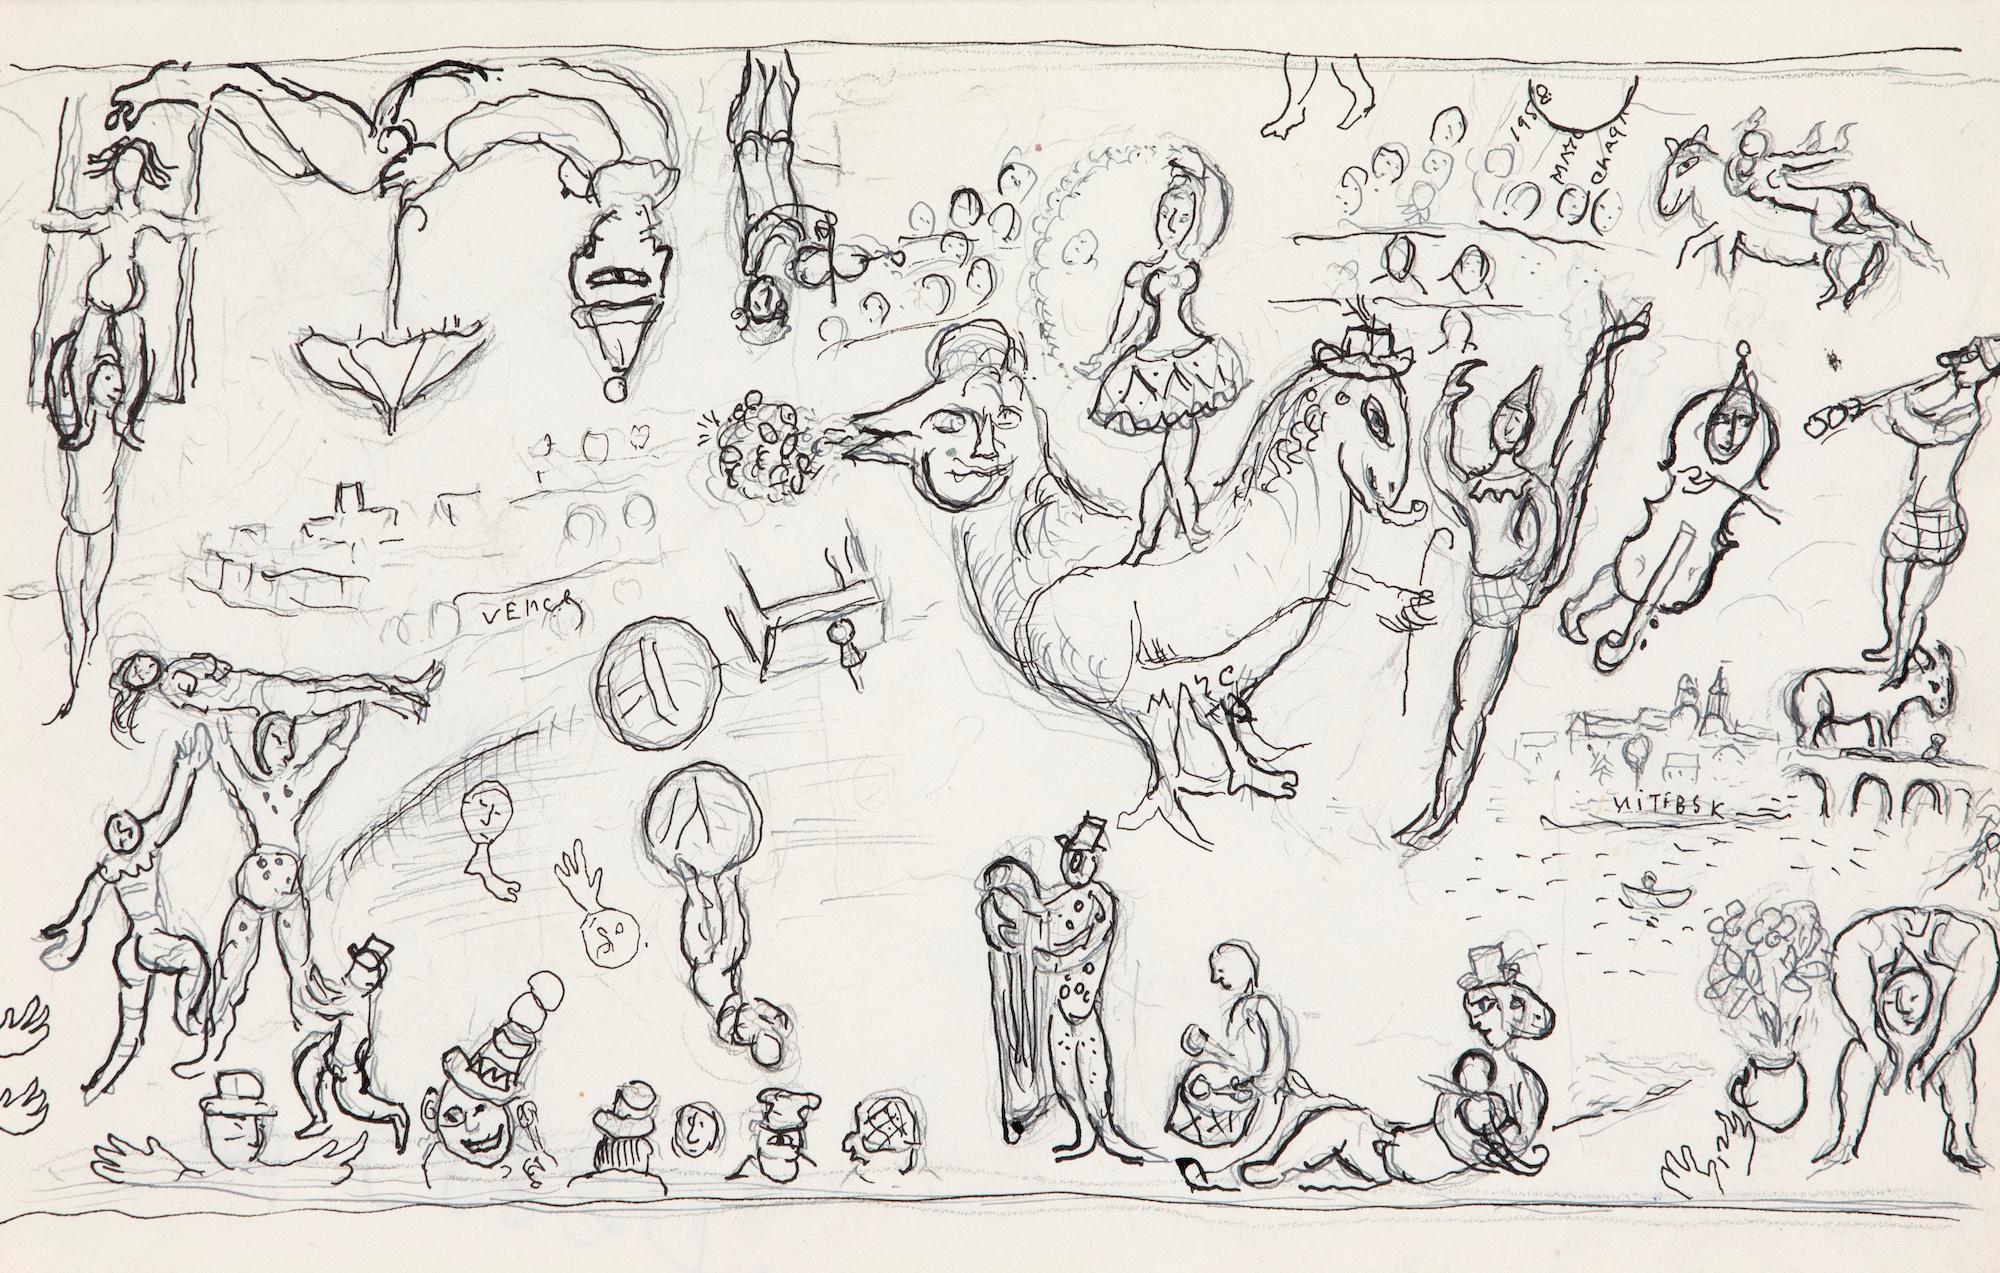 *CE PRIX COMPREND UN DROIT D'IMPORTATION DE 5 % APPLICABLE SI LE TRAVAIL RESTE AU ROYAUME-UNI UNIQUEMENT. 

Esquisse pour "Commedia dell'arte" de Marc Chagall (1887-1985)
Encre de Chine, plume et crayon sur papier
26,2 x 36,2 cm (10 ¹/₄ x 14 ¹/₄